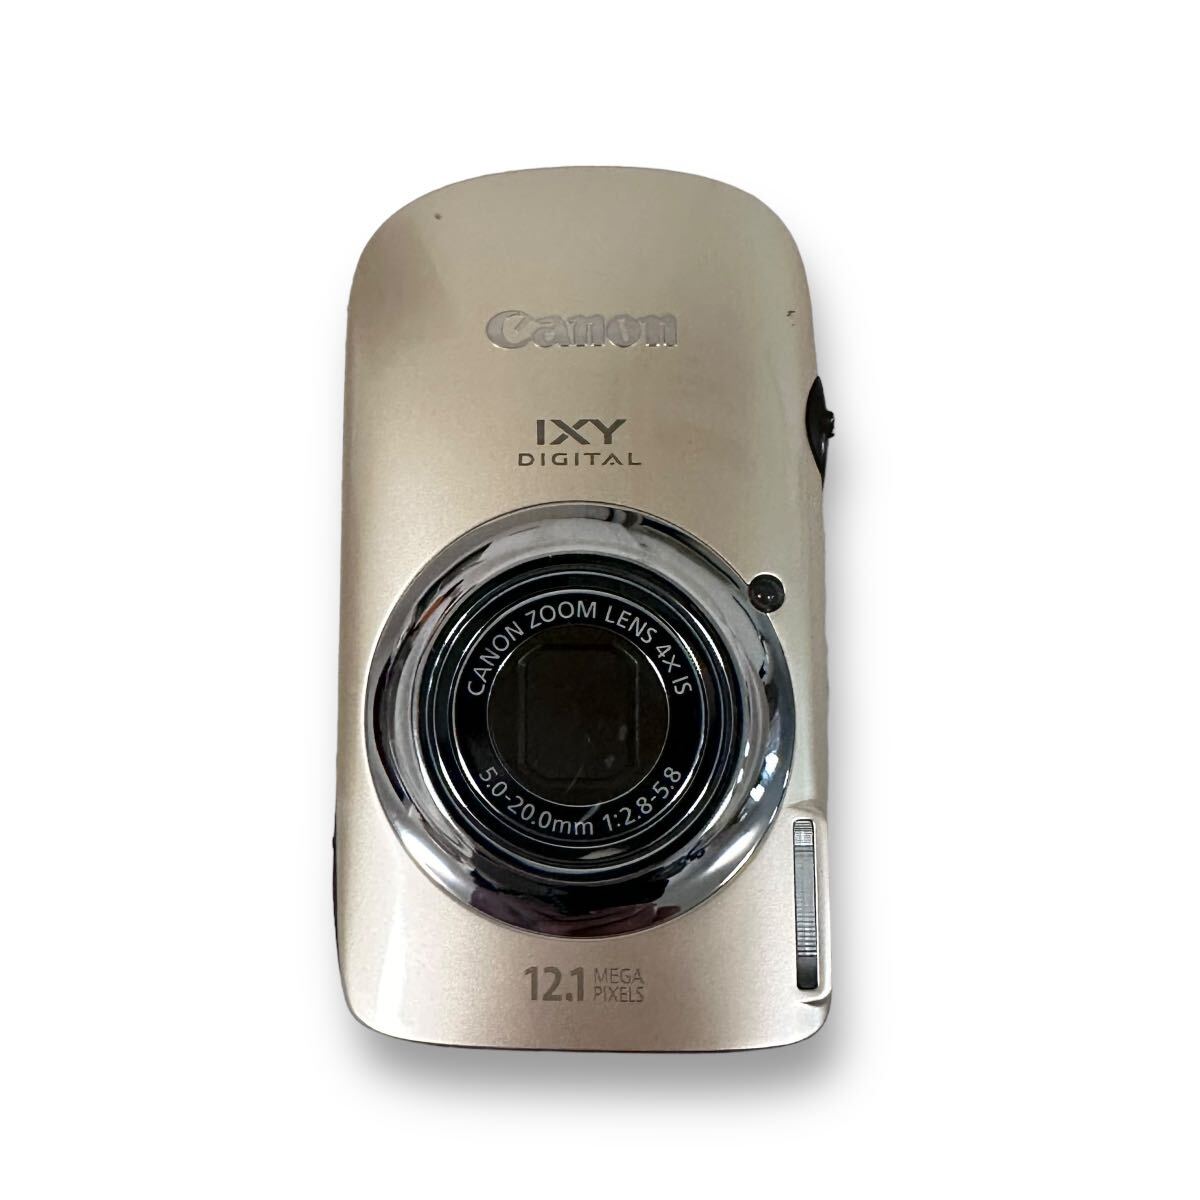 Canon IXY DIGITAL 510 IS /キヤノン コンパクト デジ タルカメラ/本体、充電器、バッテリー セット_画像3